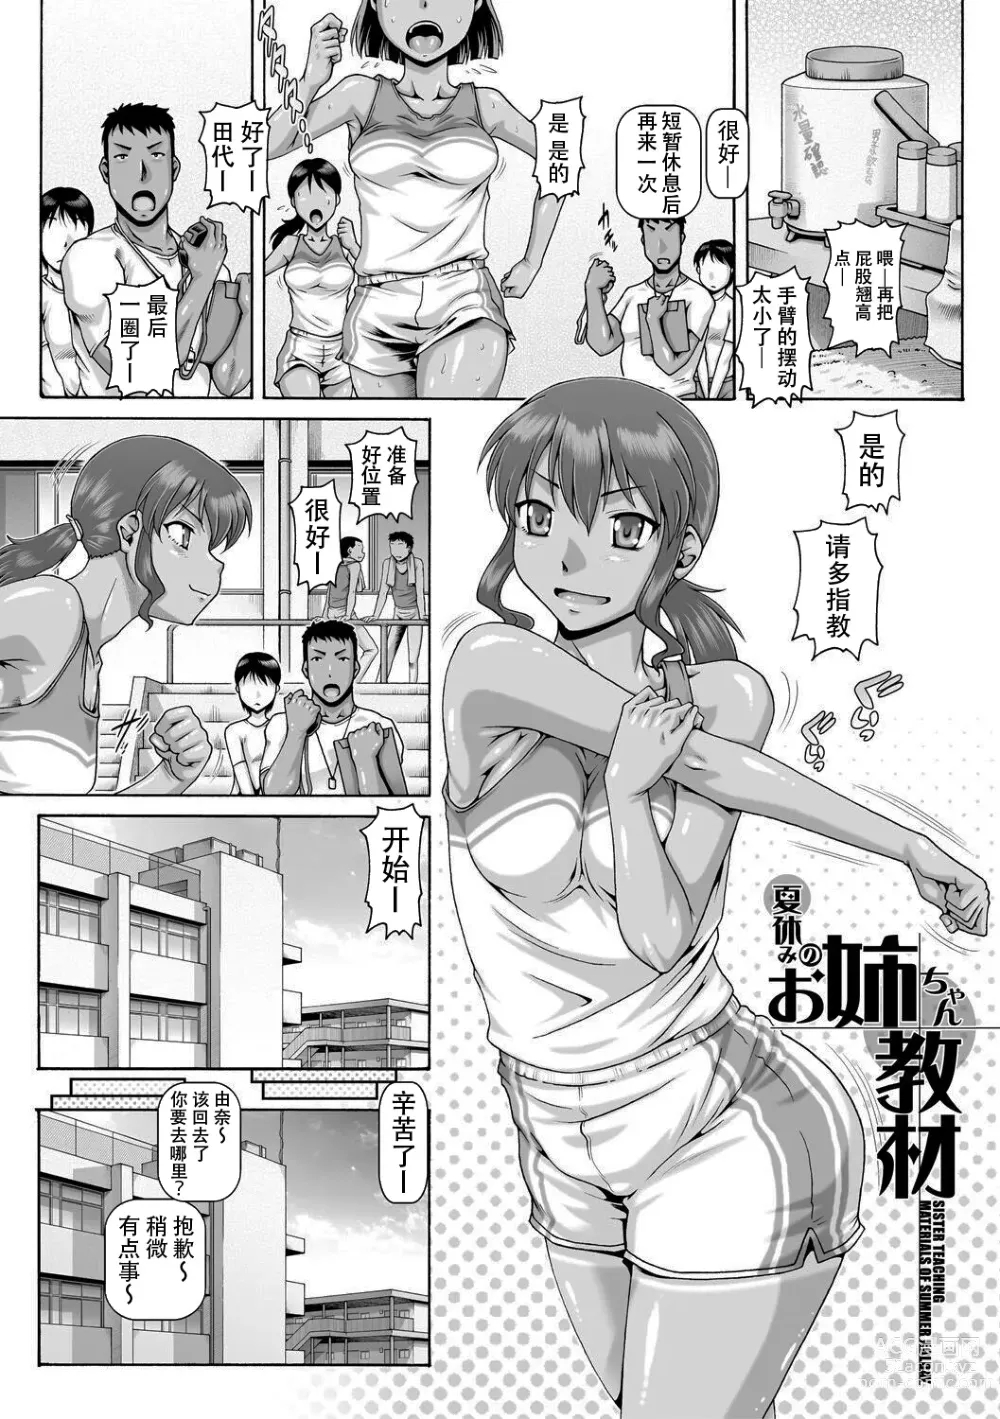 Page 1 of manga Natsuyasumi no onechan kyozai